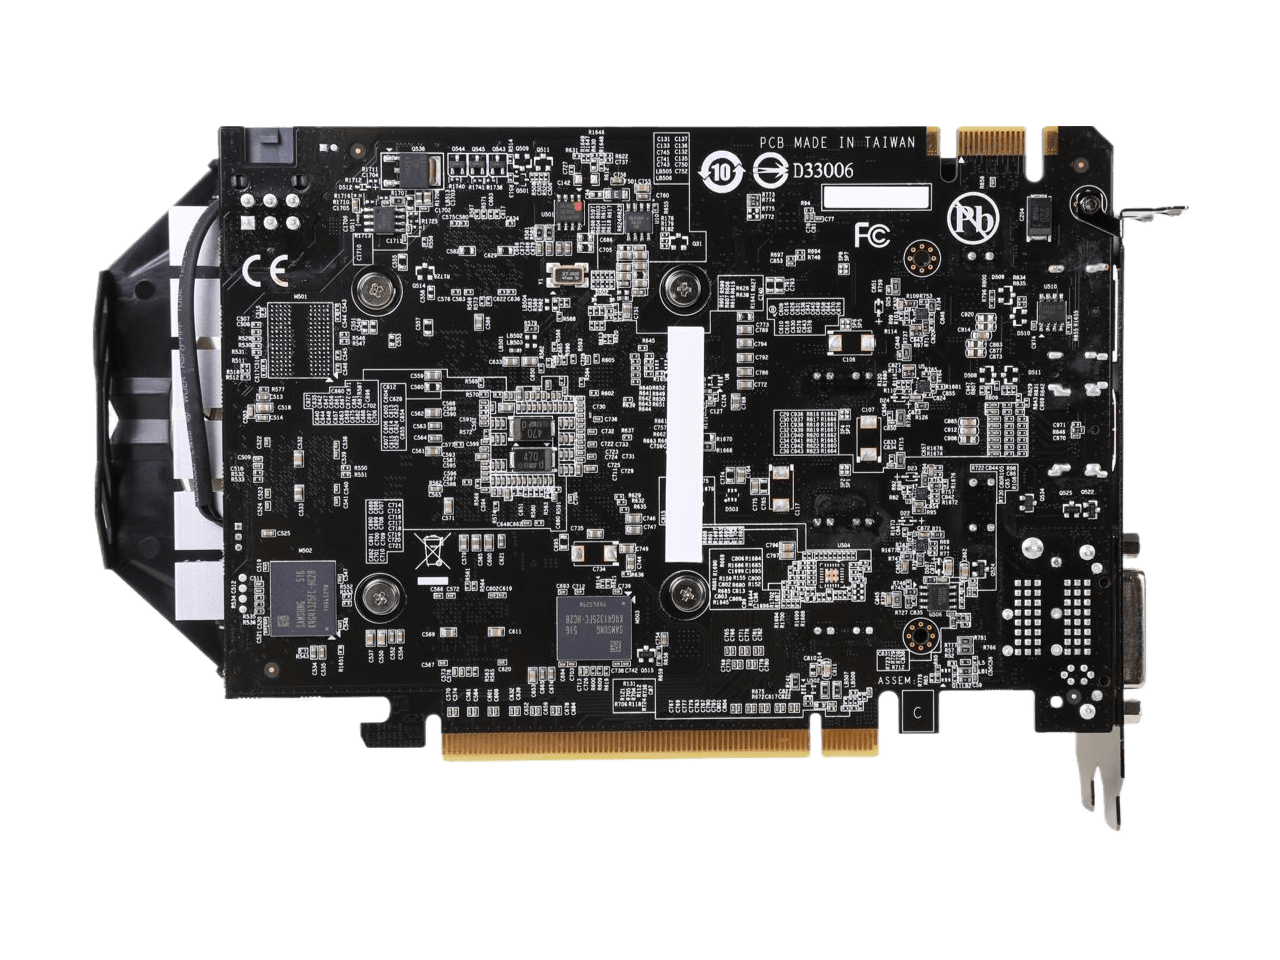 GIGABYTE GeForce GTX 950 WINDFORCE 2X OC EDITION 2GB 128-Bit GDDR5 Video Card GV-N950WF2OC-2GD